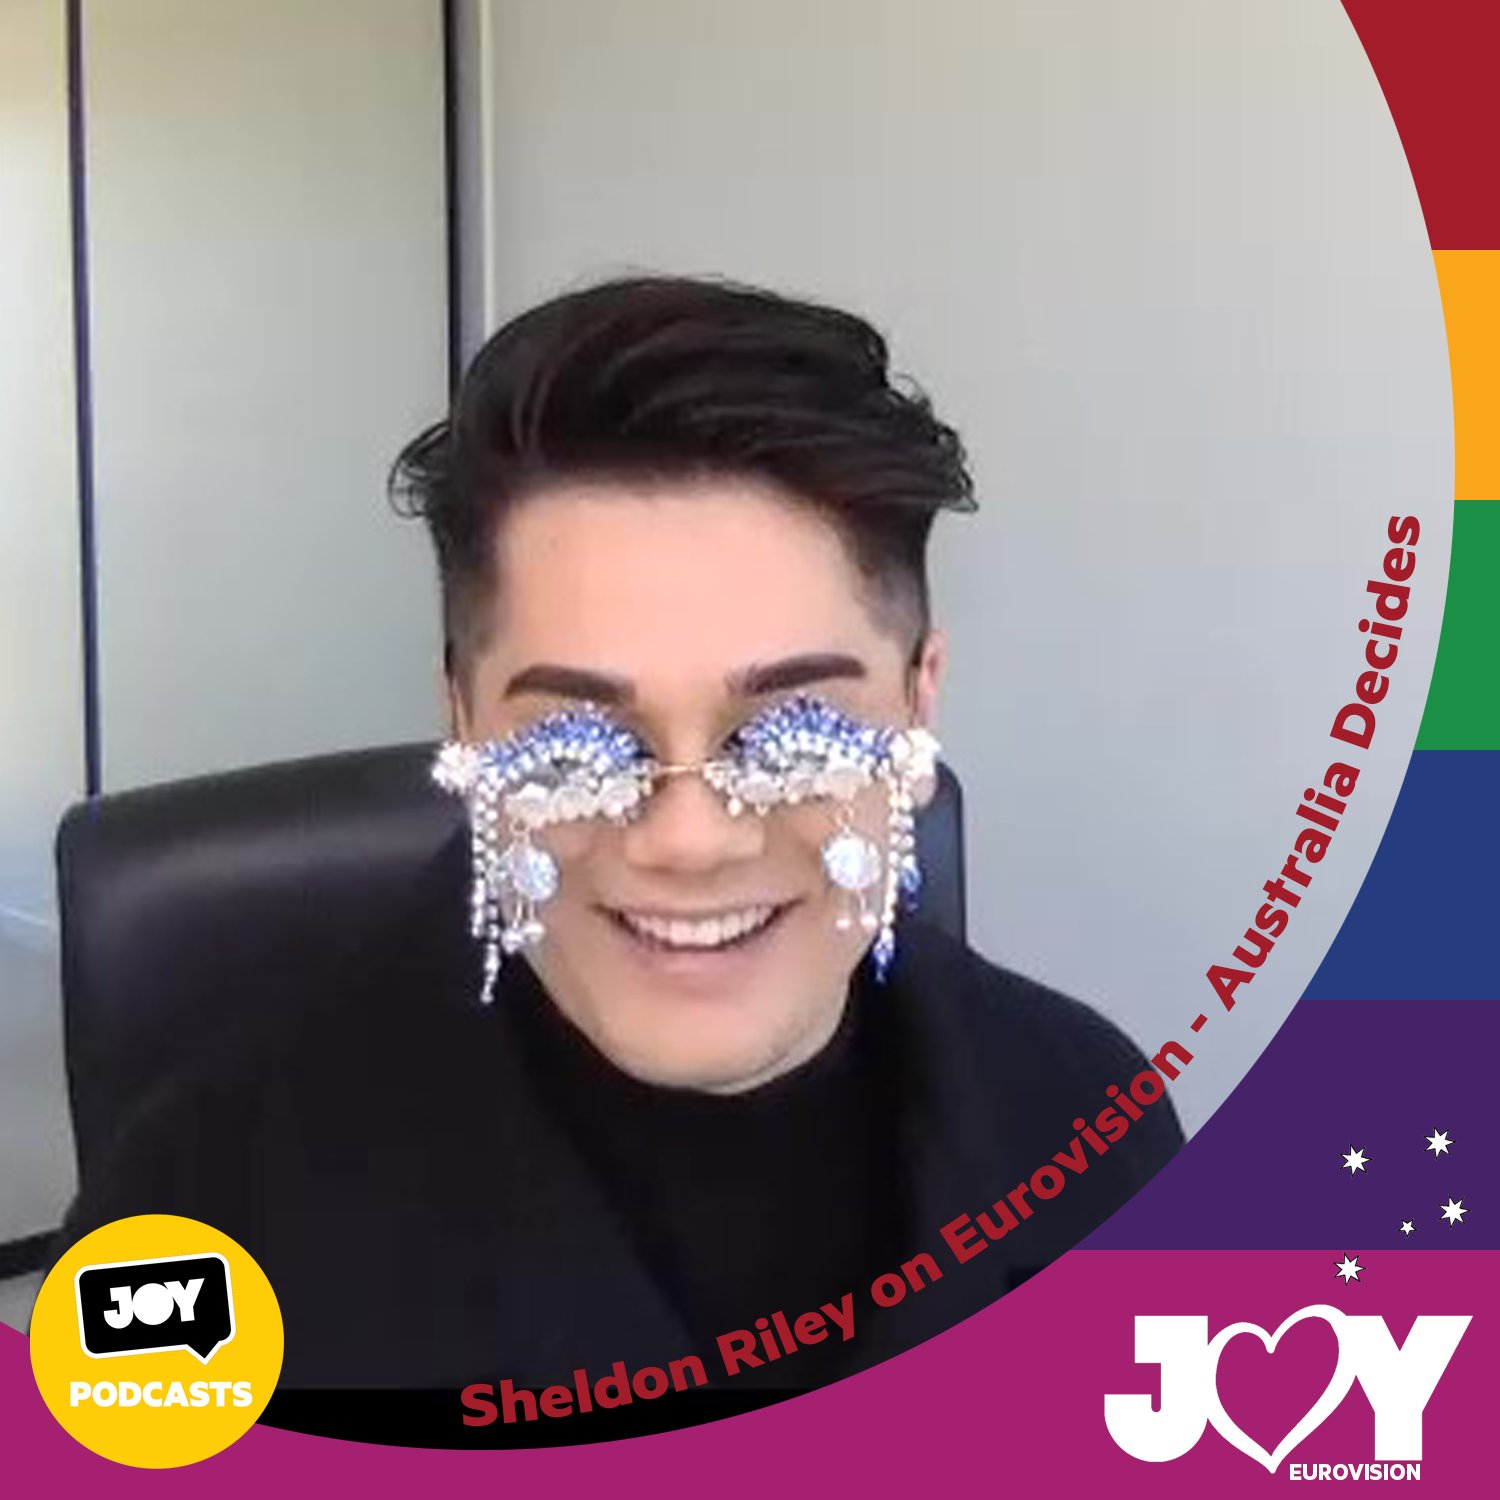 🇦🇺 Sheldon Riley on Eurovision – Australia Decides 2022